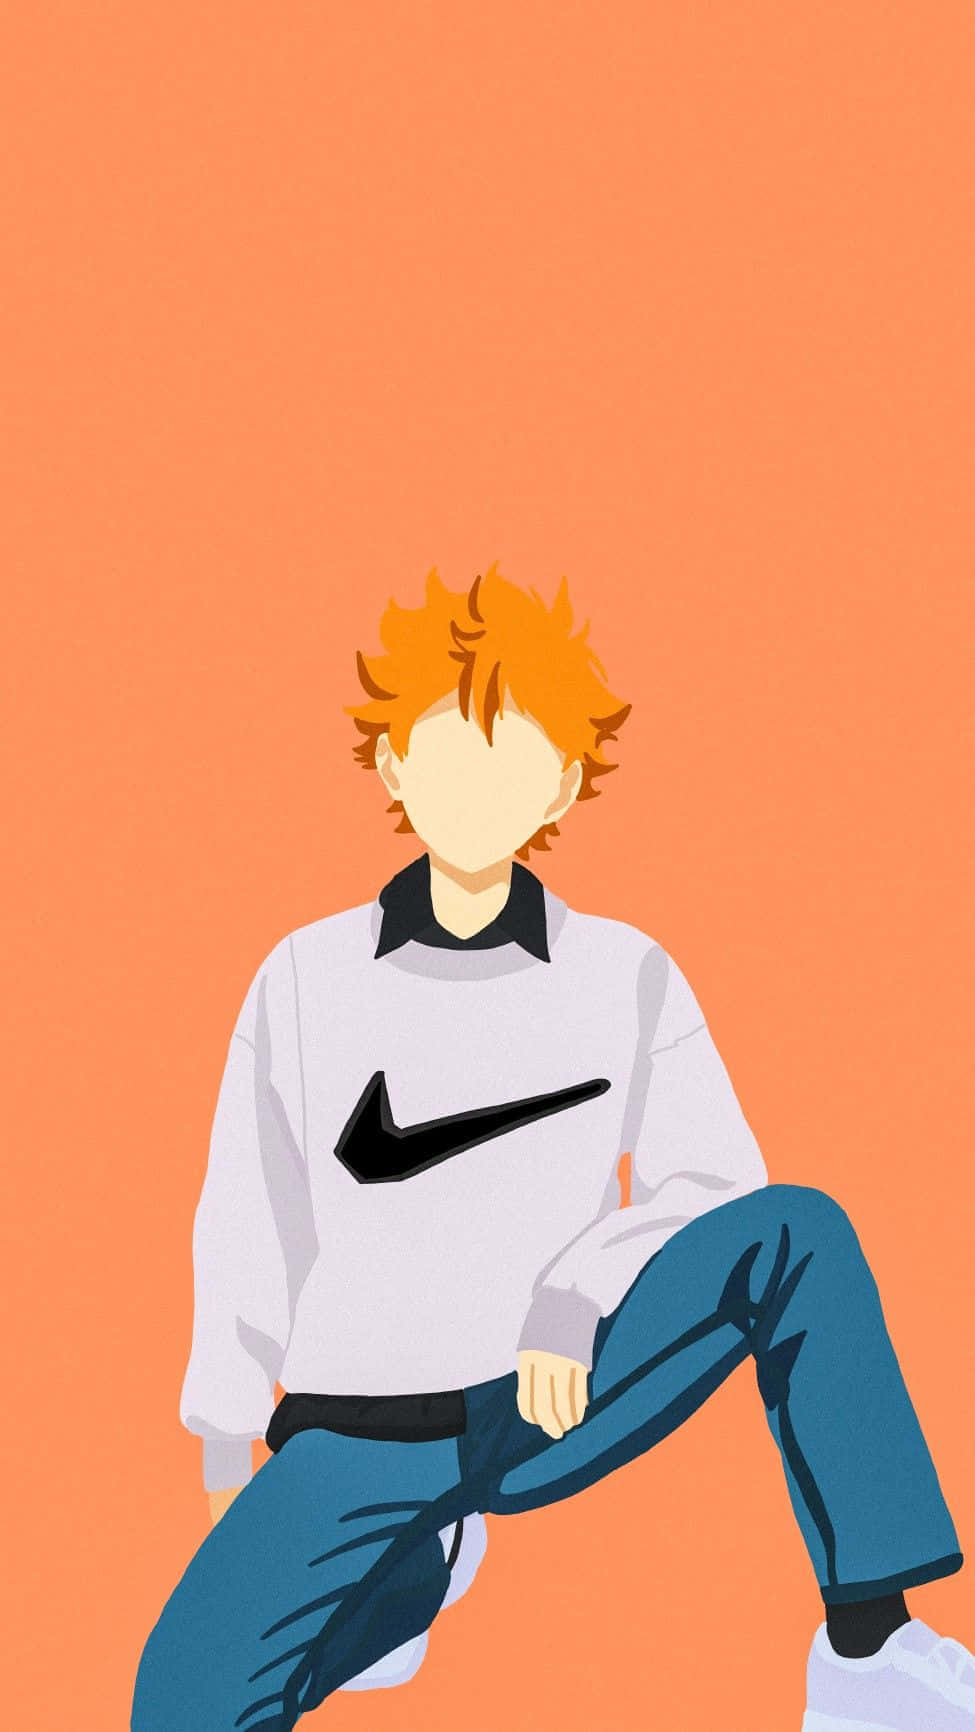 Orange Haired Anime Character Illustration Wallpaper